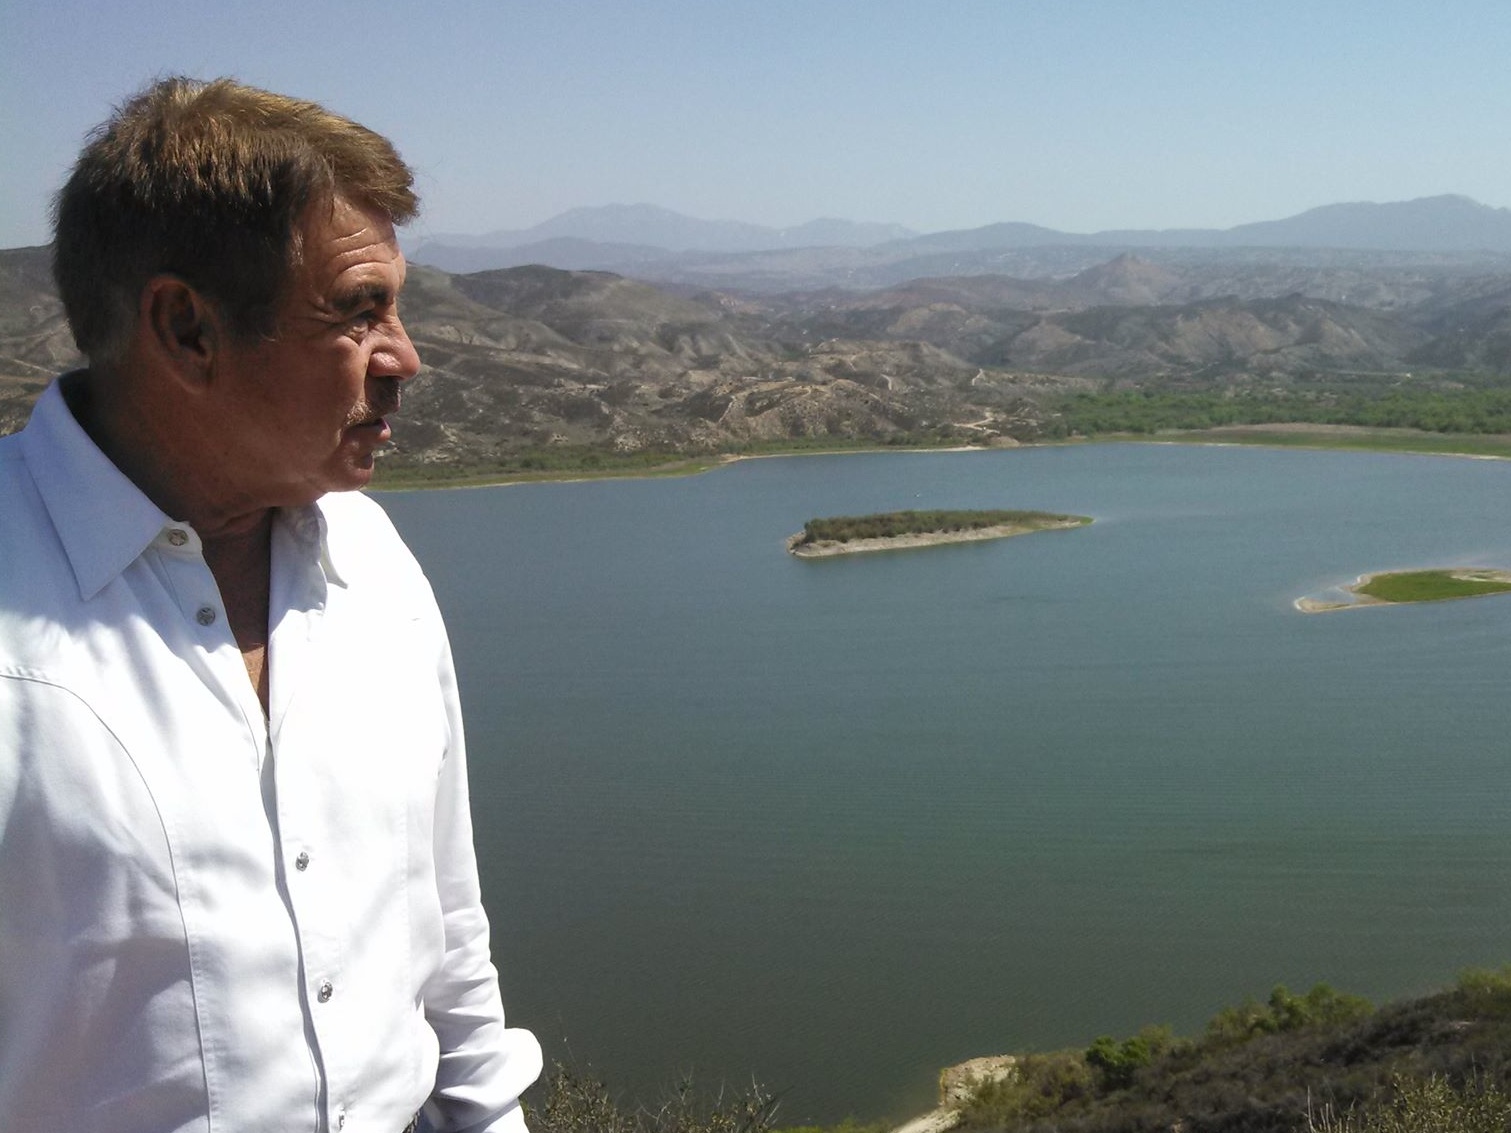 Federal Land Grab Comes to California at Vail Lake